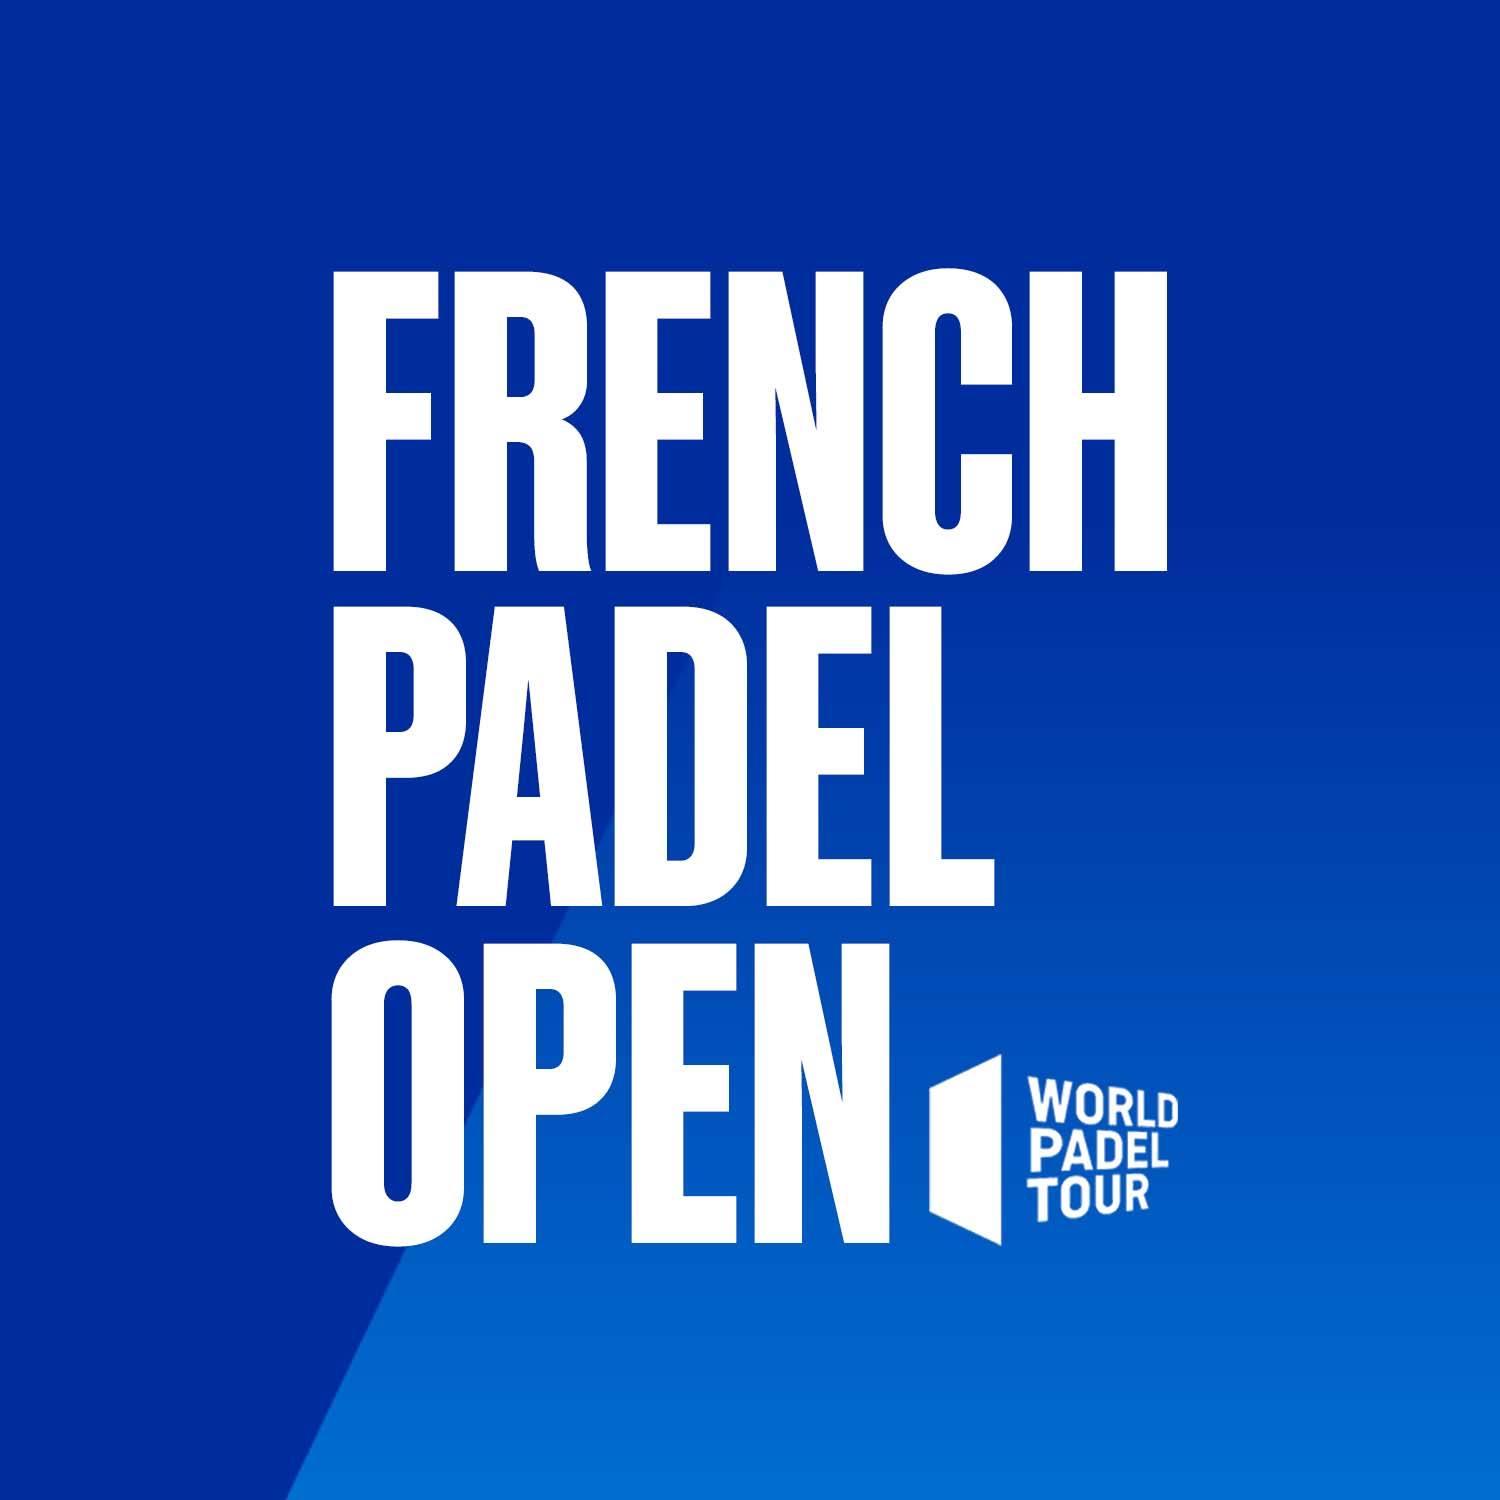 World Padel Tour French Open: het Ticket Office gaat binnenkort open